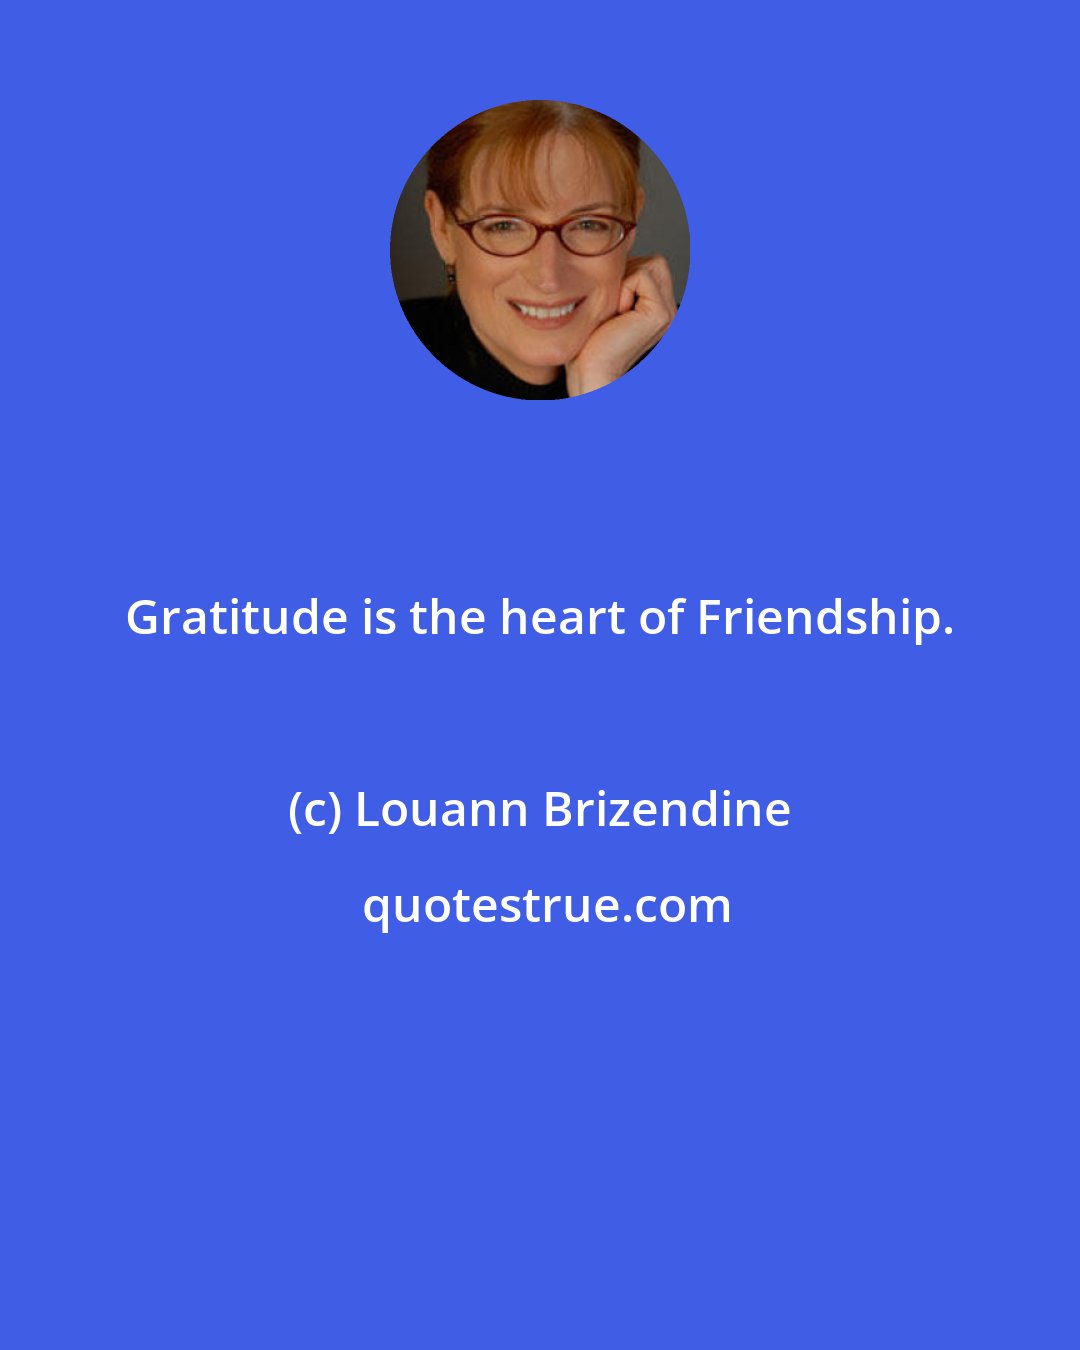 Louann Brizendine: Gratitude is the heart of Friendship.